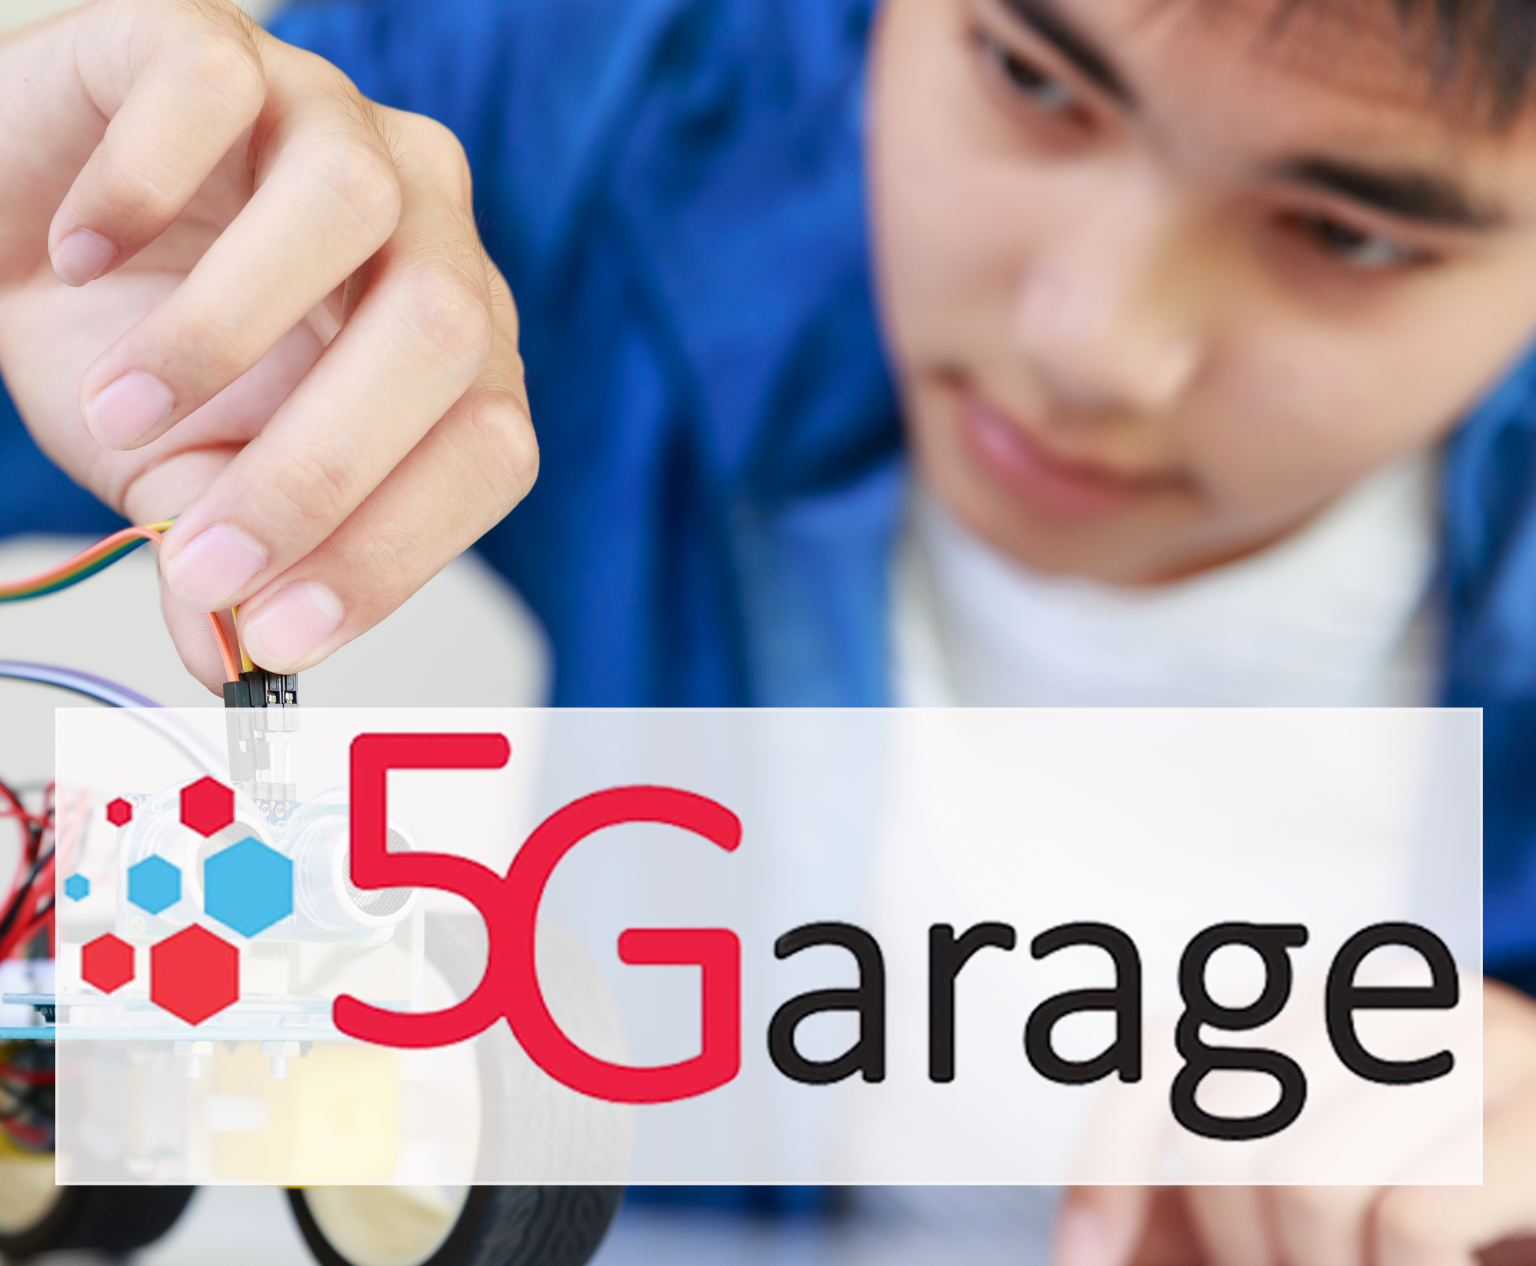 5G-Garage-services-1536x1266